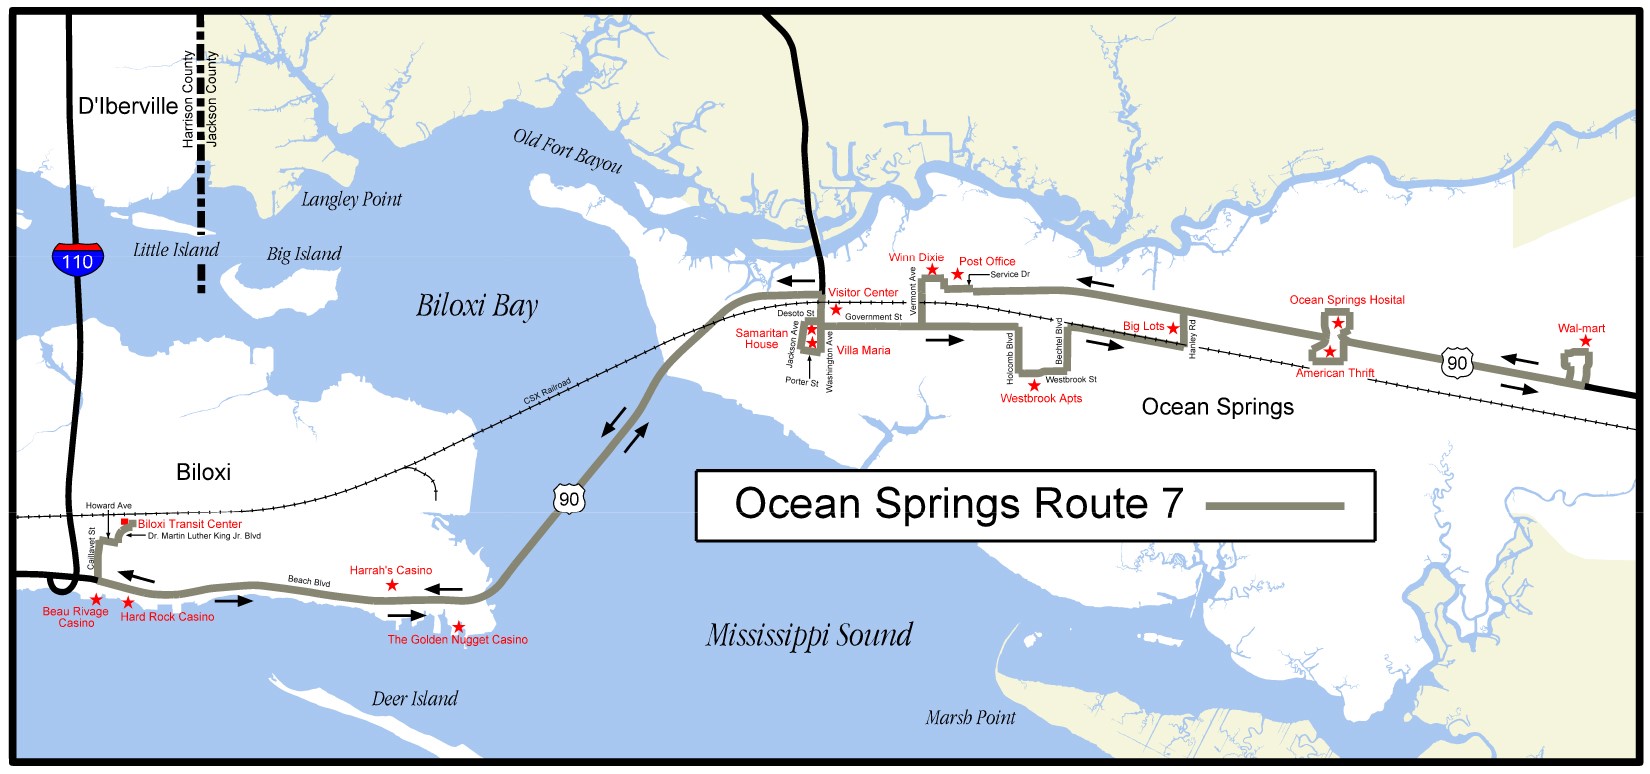 Ocean Springs Route 7